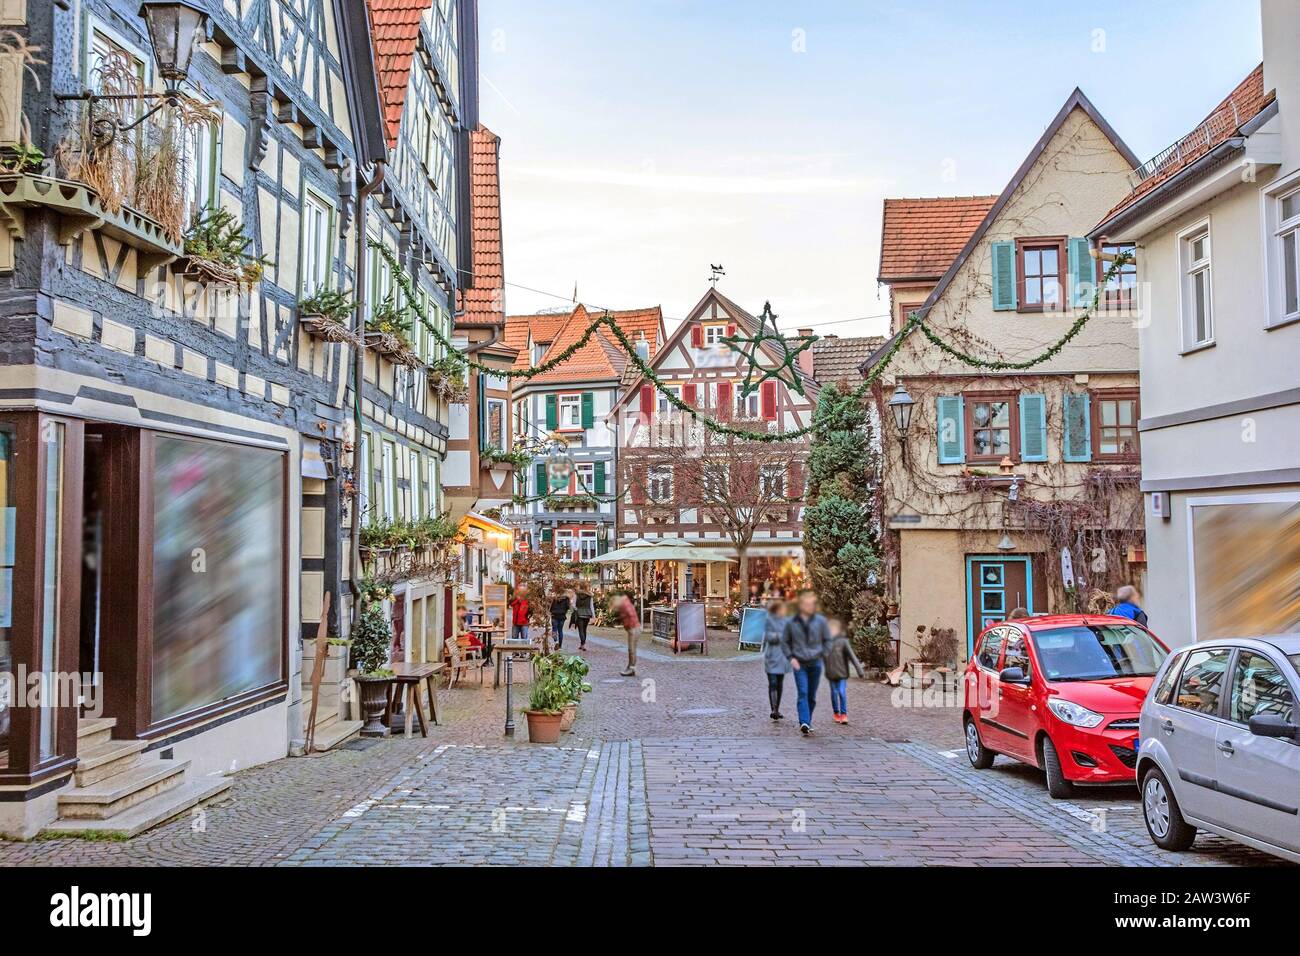 Besigheim, Germania - 27 dicembre 2016: Case a graticcio nel vecchio quartiere storico della città. Foto Stock